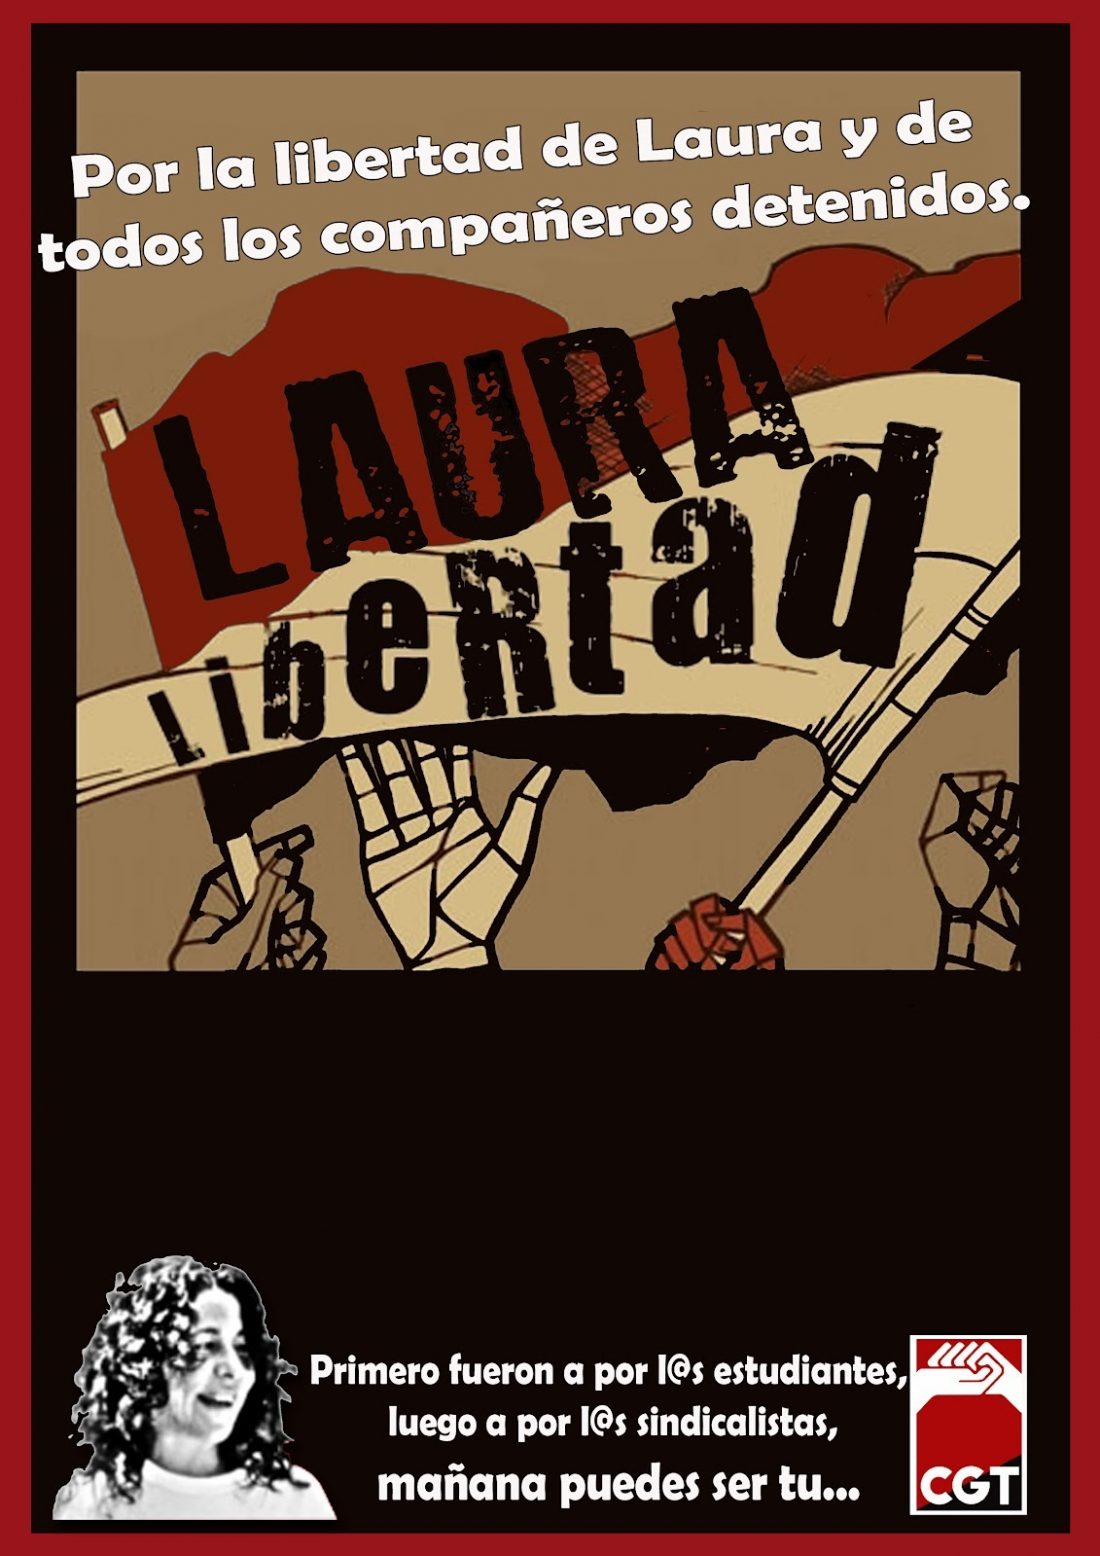 Los sindicatos catalanes reclaman el cese de la represión y la libertad de los detenidos